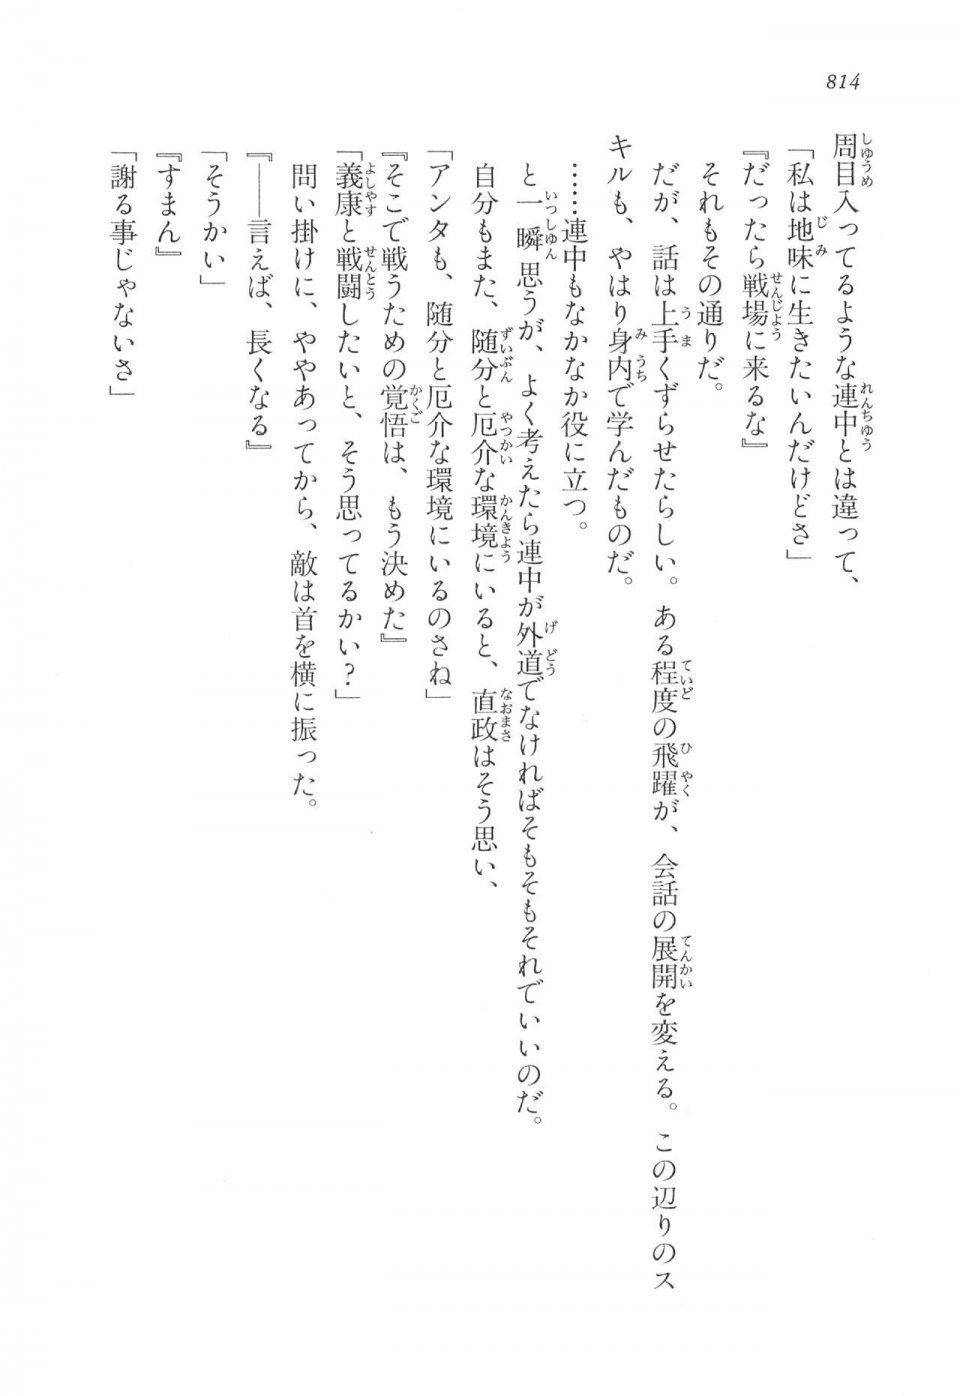 Kyoukai Senjou no Horizon LN Vol 17(7B) - Photo #816